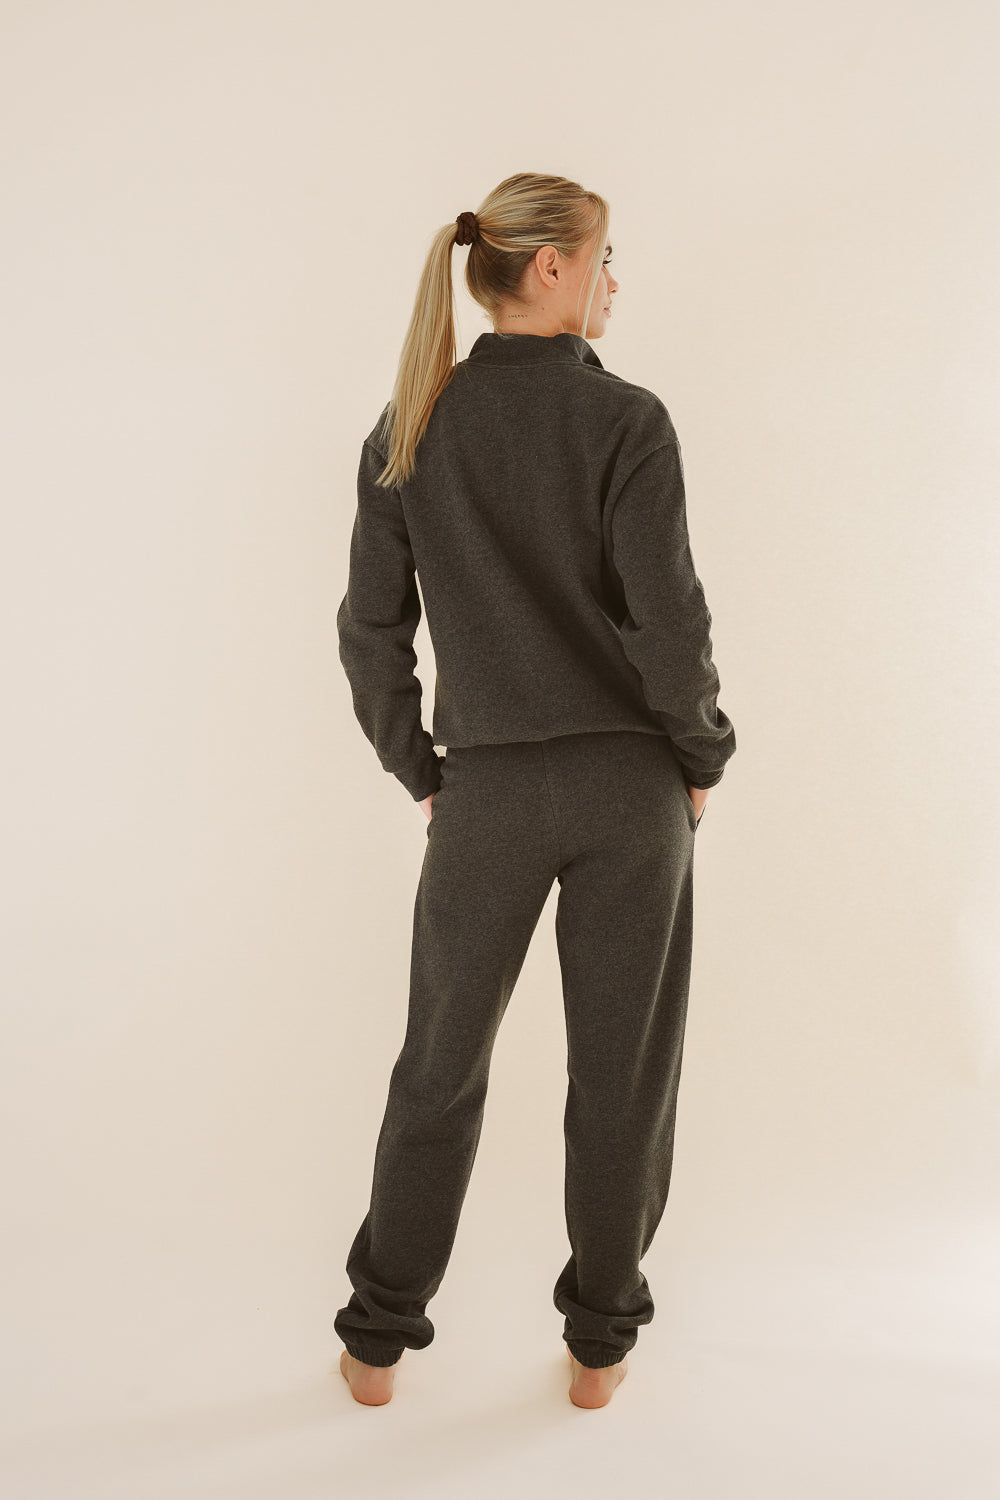 Dunkelgraue Jogginghose AAMY aus 100% Bio-Baumwolle von Pura Clothing